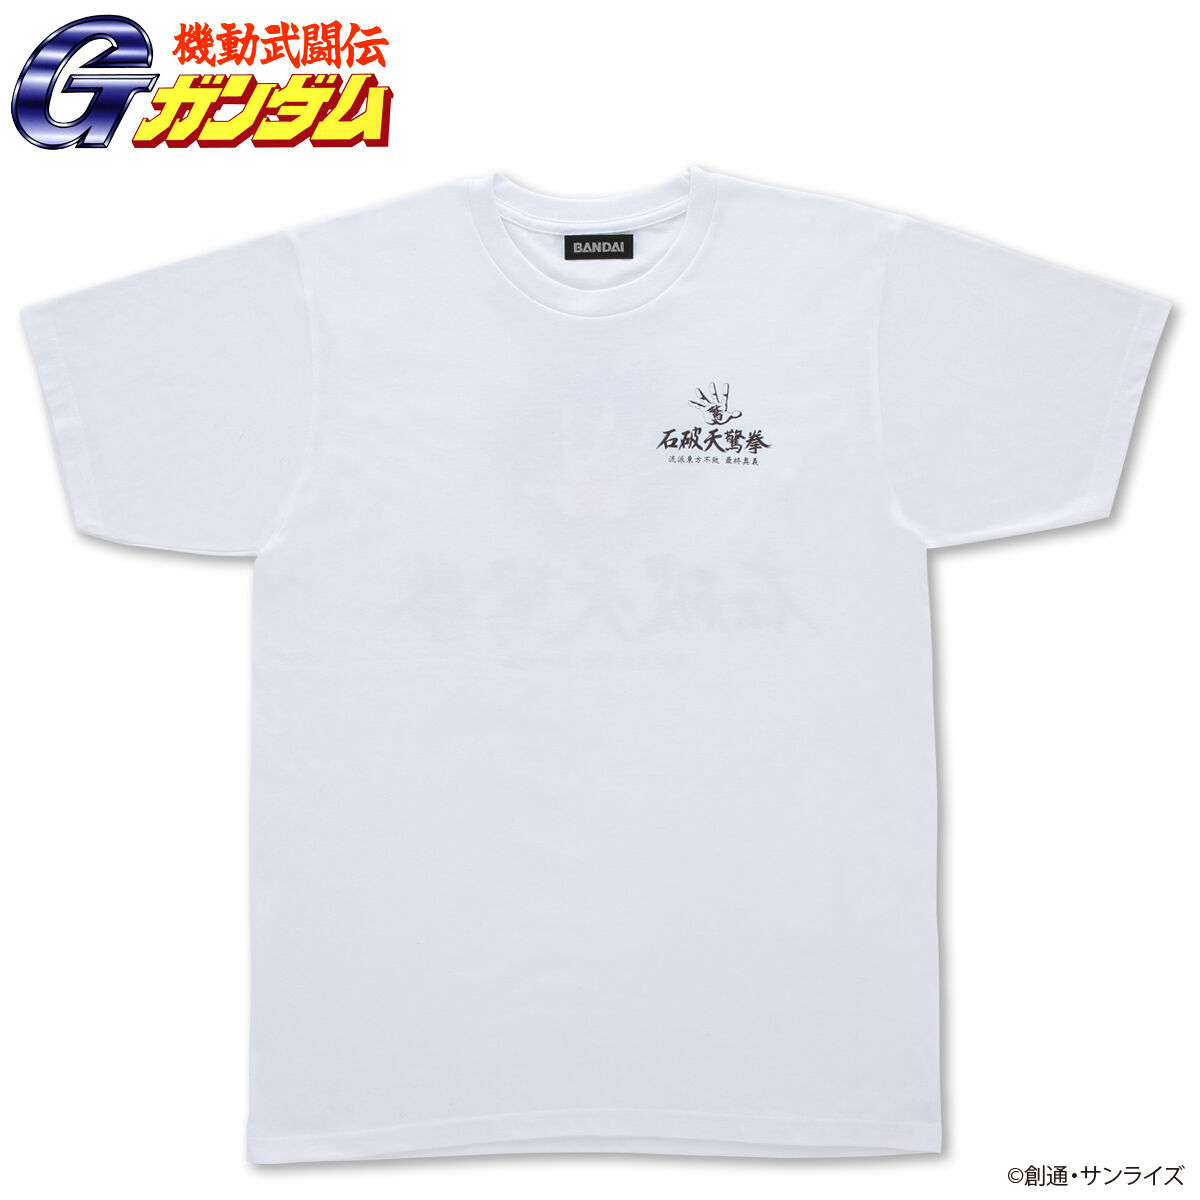 Mobile Fighter G Gundam Sekiha Tenkyouken T-shirt